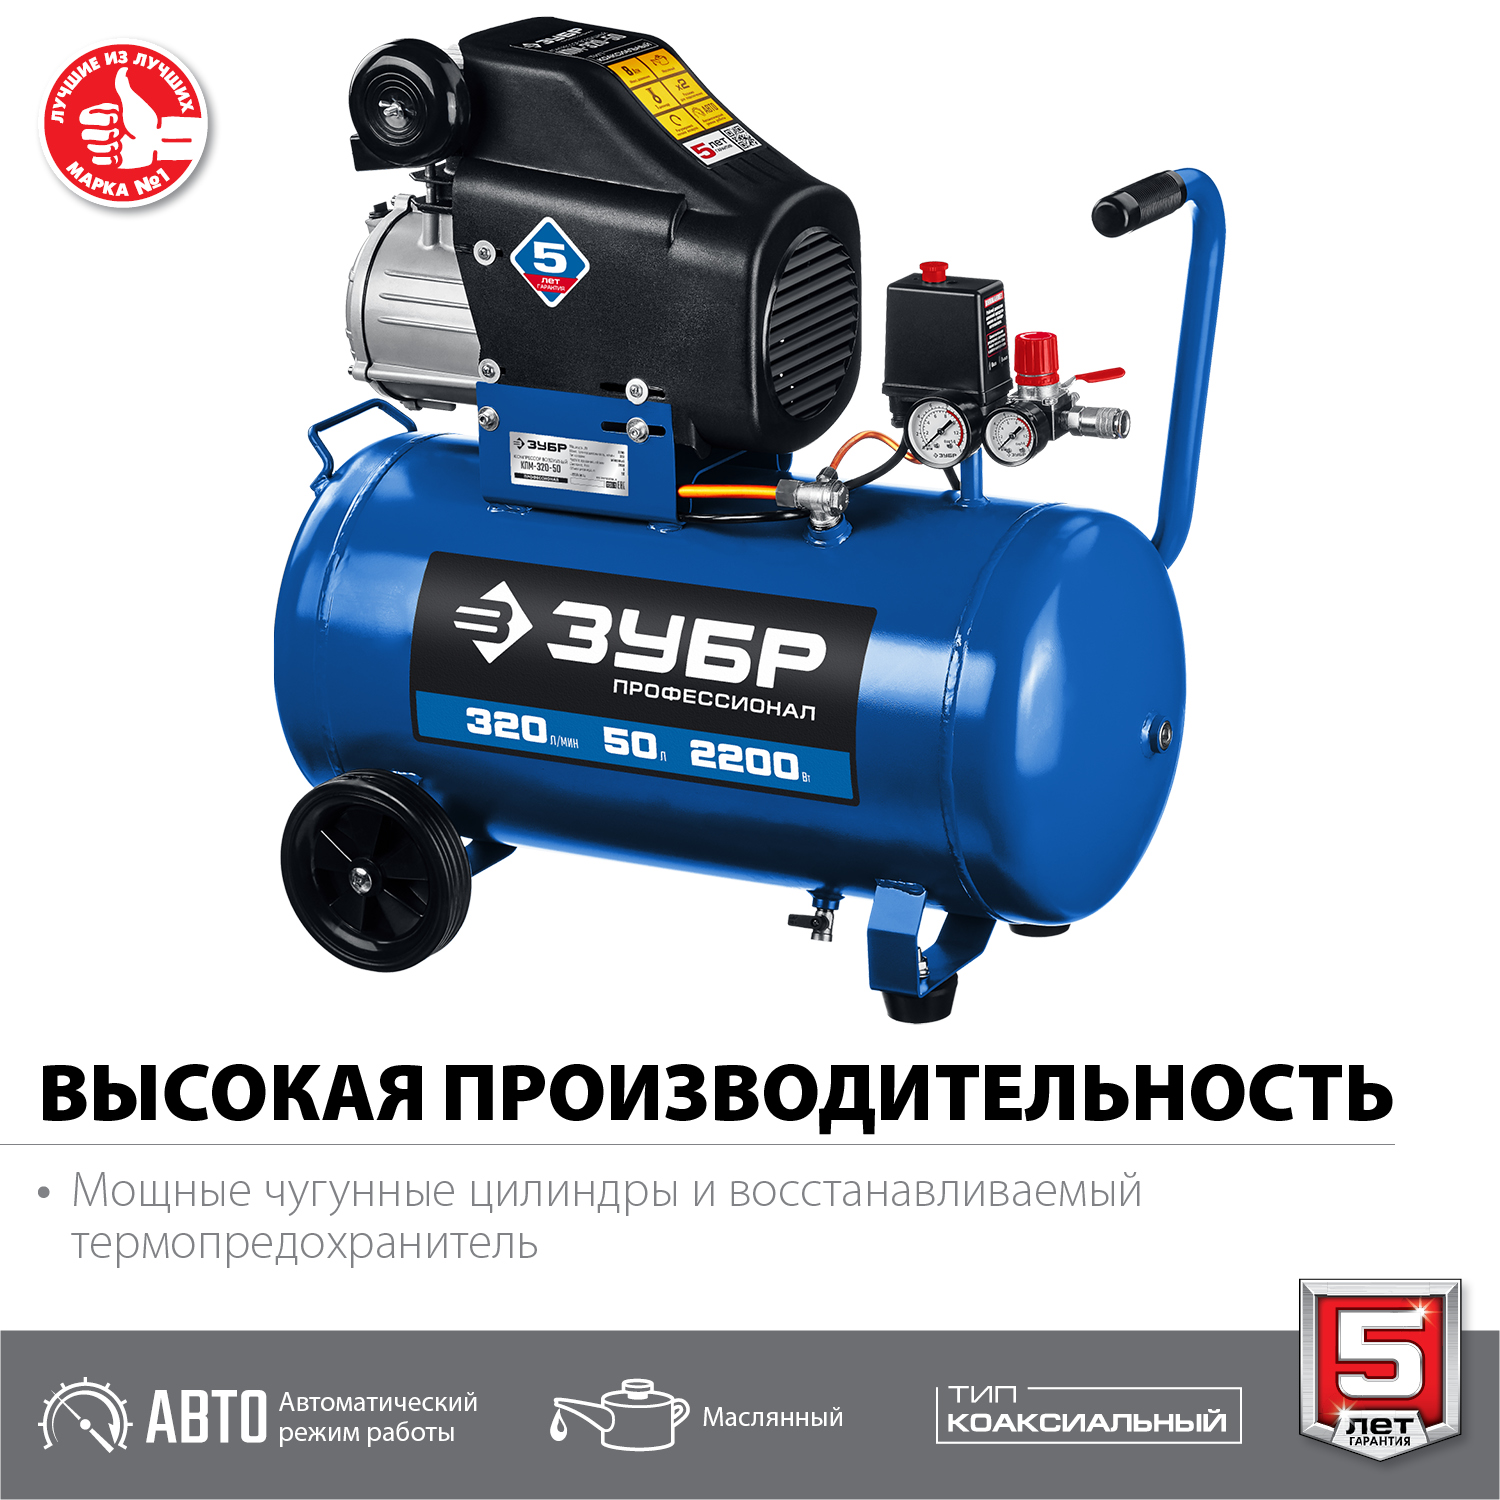 ЗУБР 320 л/мин, 50 л, 2200 Вт, масляный компрессор, Профессионал (КПМ-320-50)